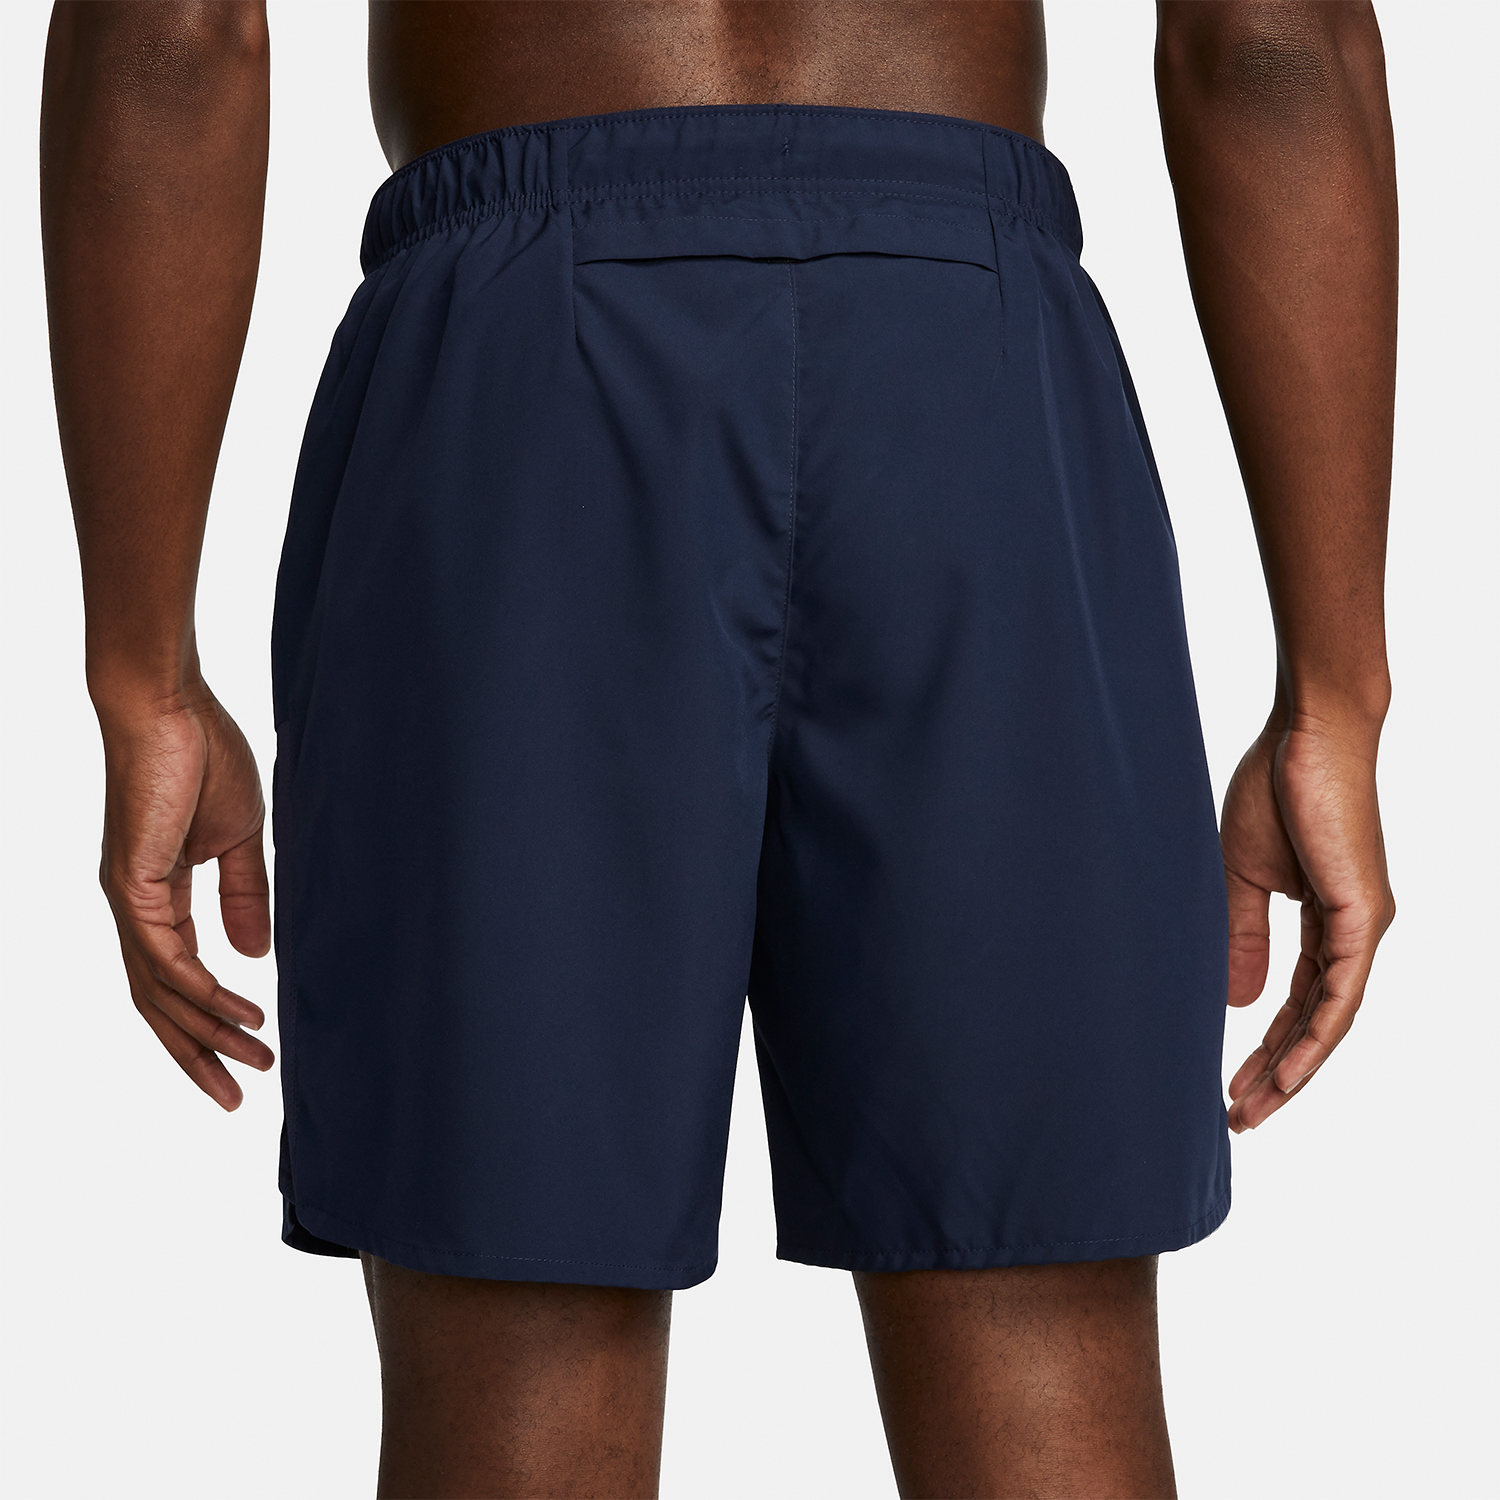 Nike Challenger 7in Men's Running Shorts - Obsidian/Black